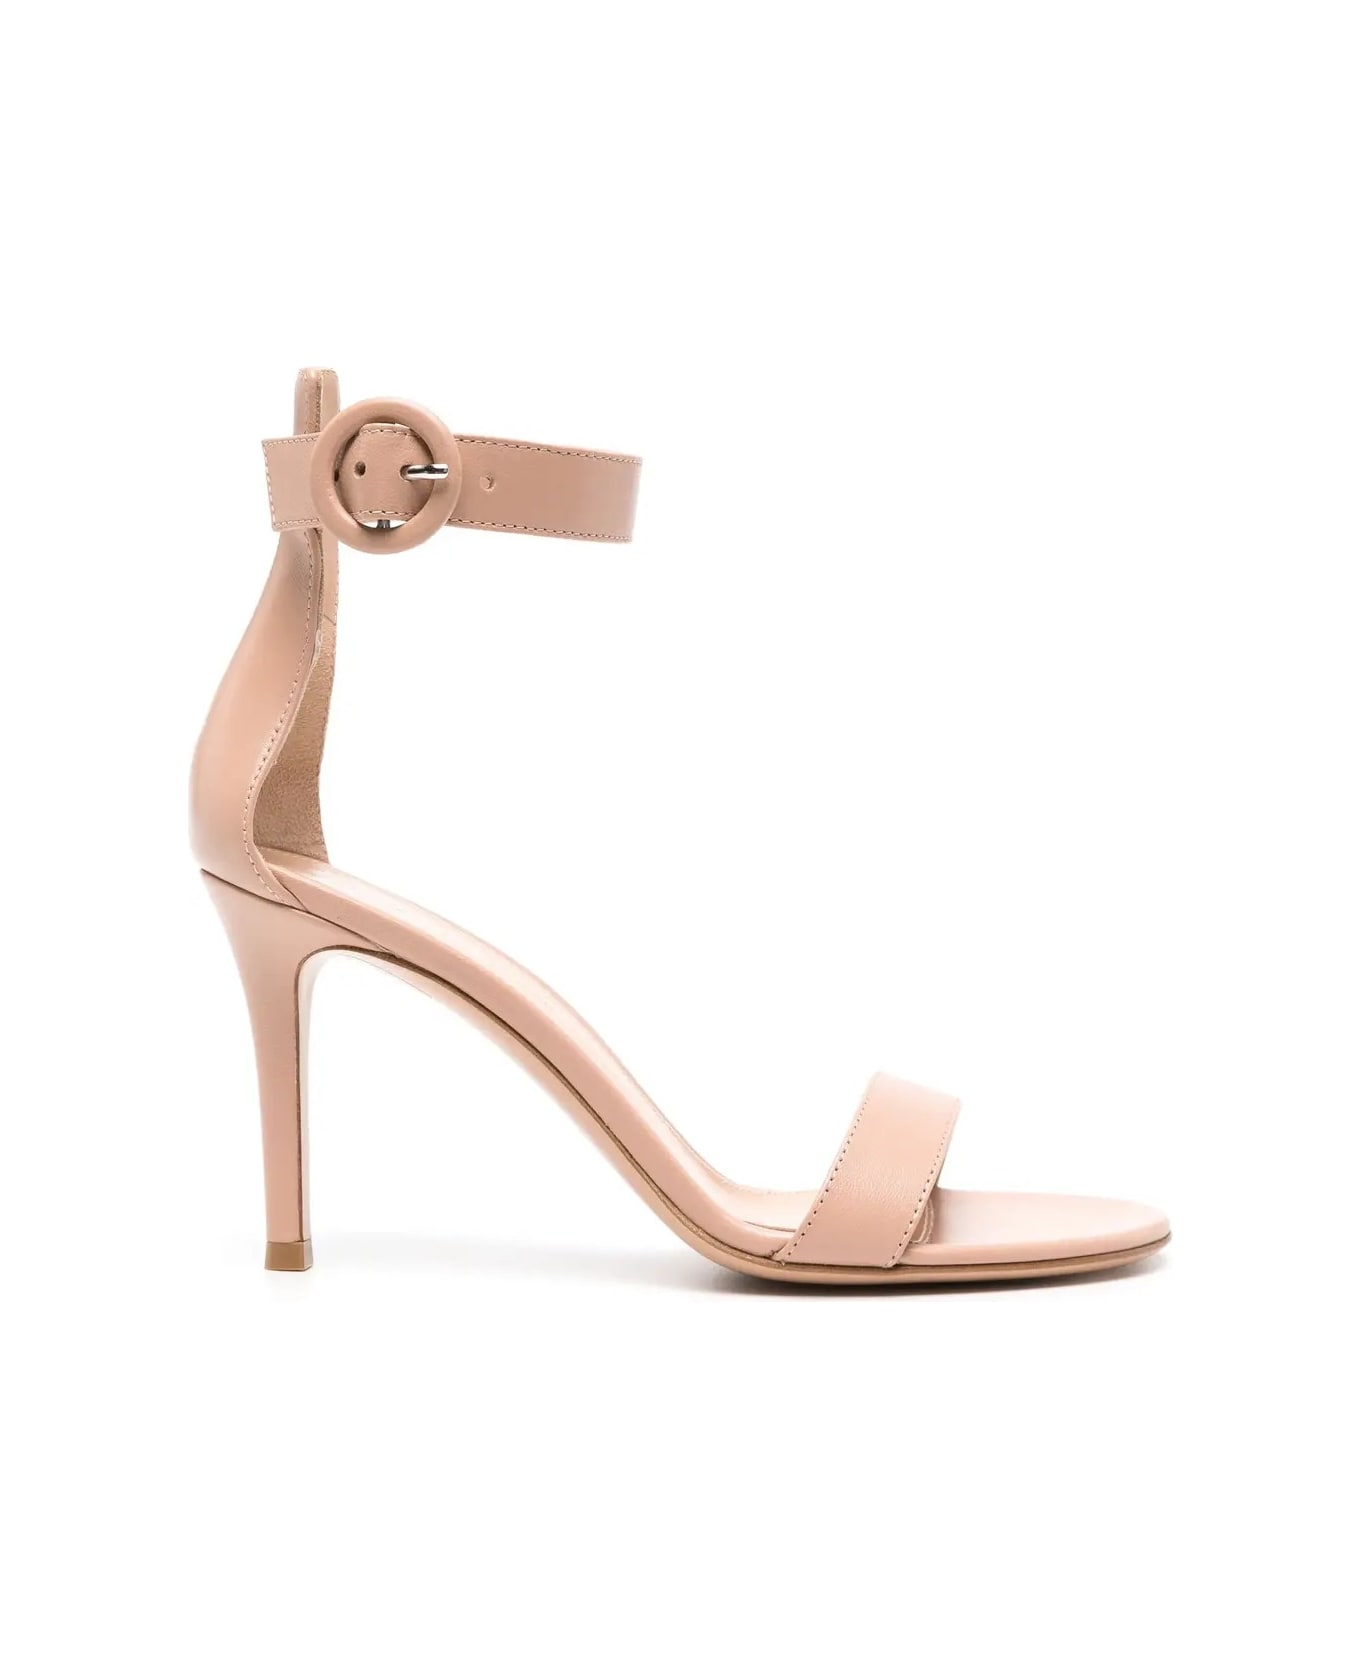 Gianvito Rossi Portofino 85 Sandals In Nude Leather - Pink